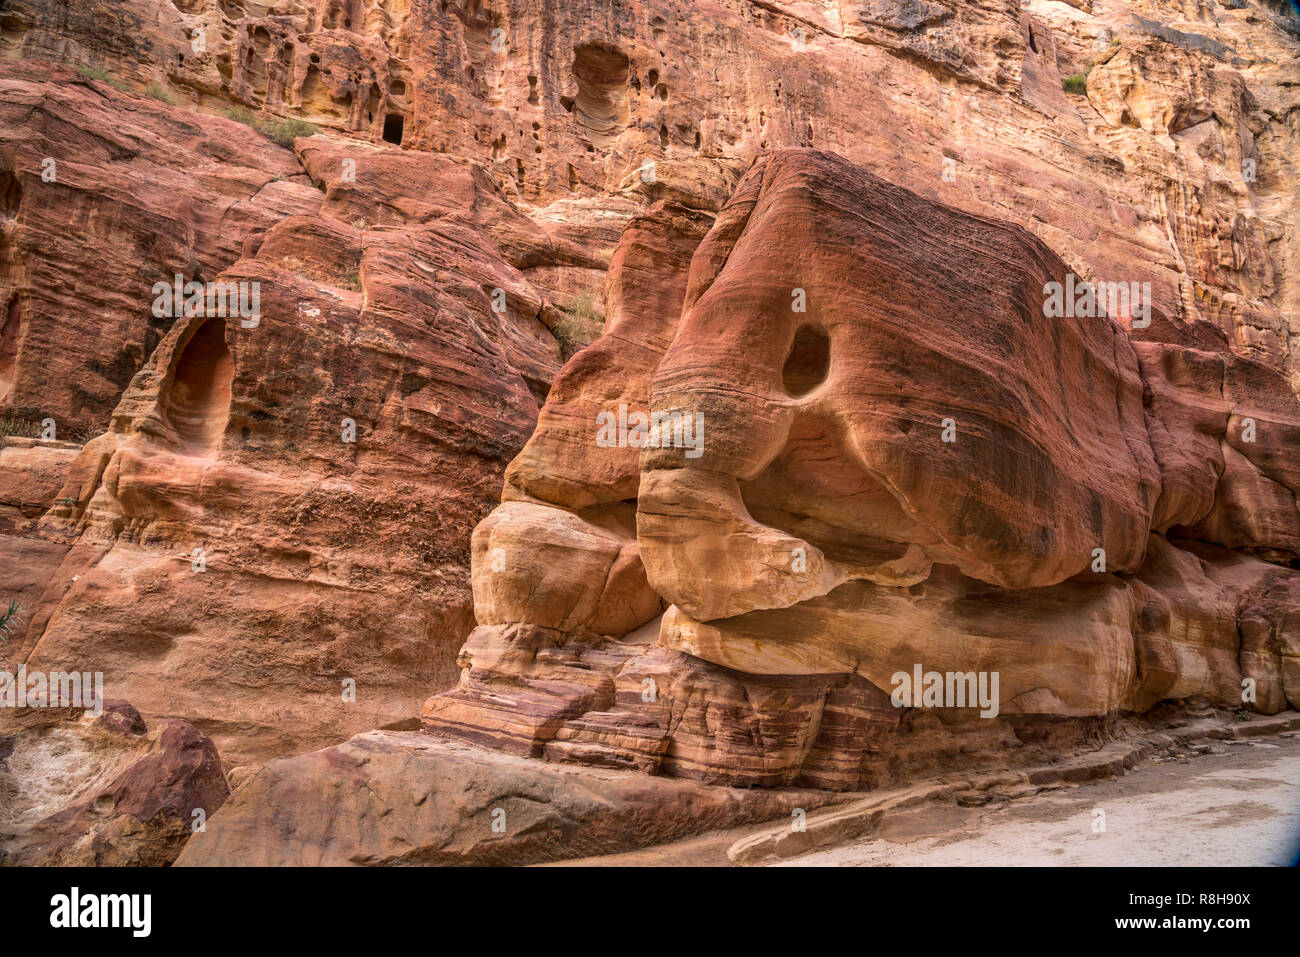 Felsen in der Schlucht Siq"führt zu Petra, Jordanien, Asien | roch formazione al passaggio stretto Siq che conduce a Petra, Giordania, Asia Foto Stock